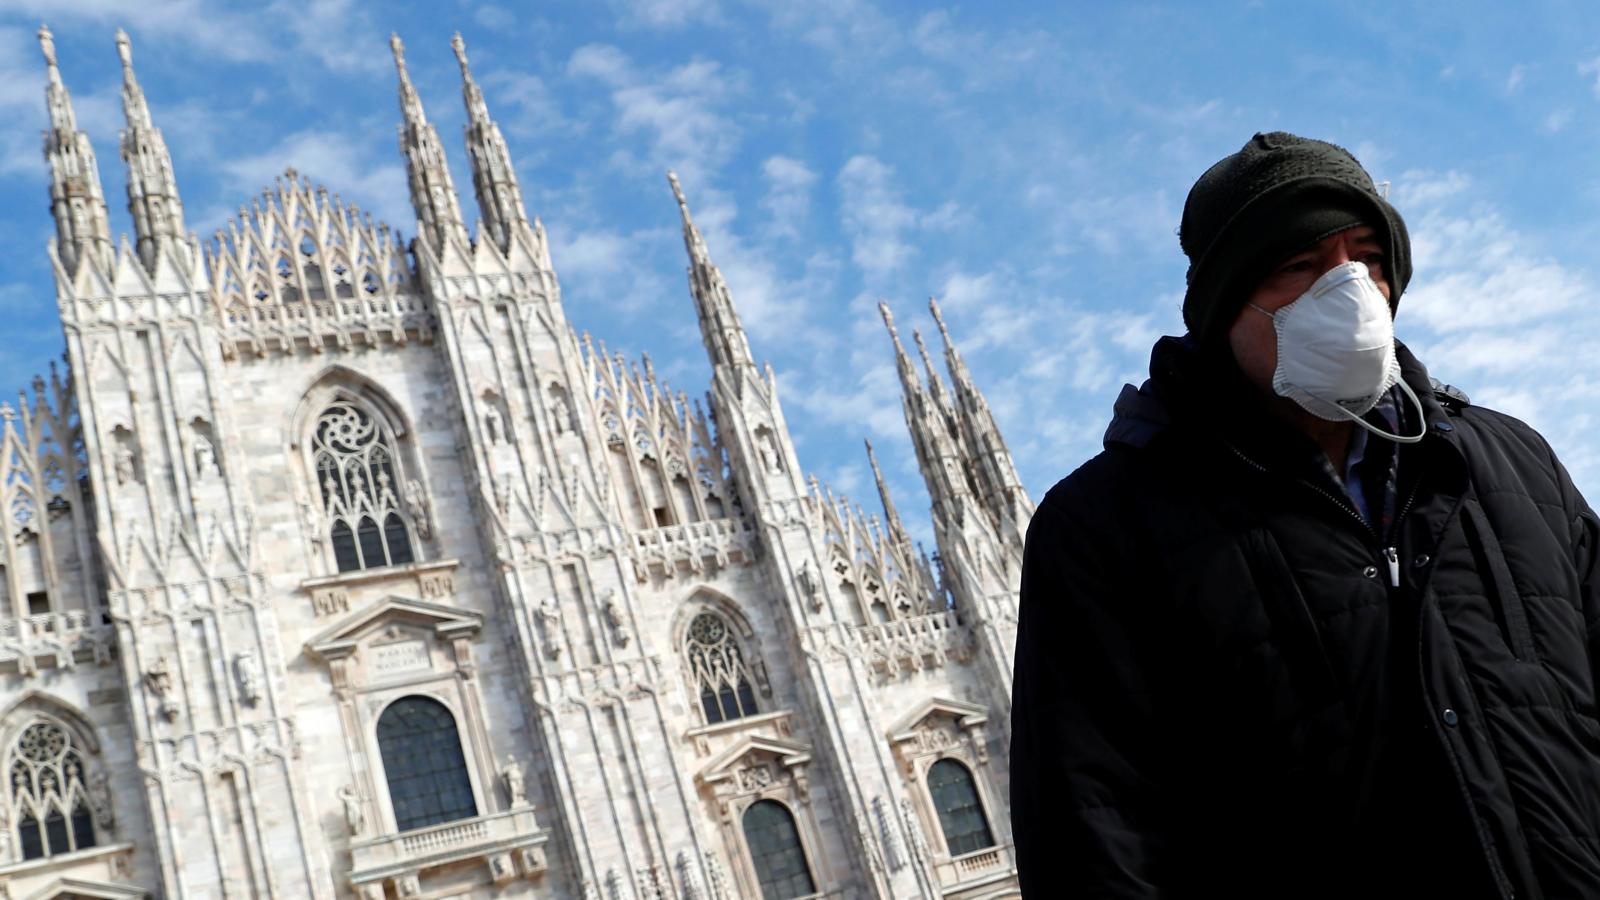 Ευχάριστα νέα για την Ιταλία: Πέφτει ο ημερήσιος αριθμός κρουσμάτων κορωνοϊού (φωτο)